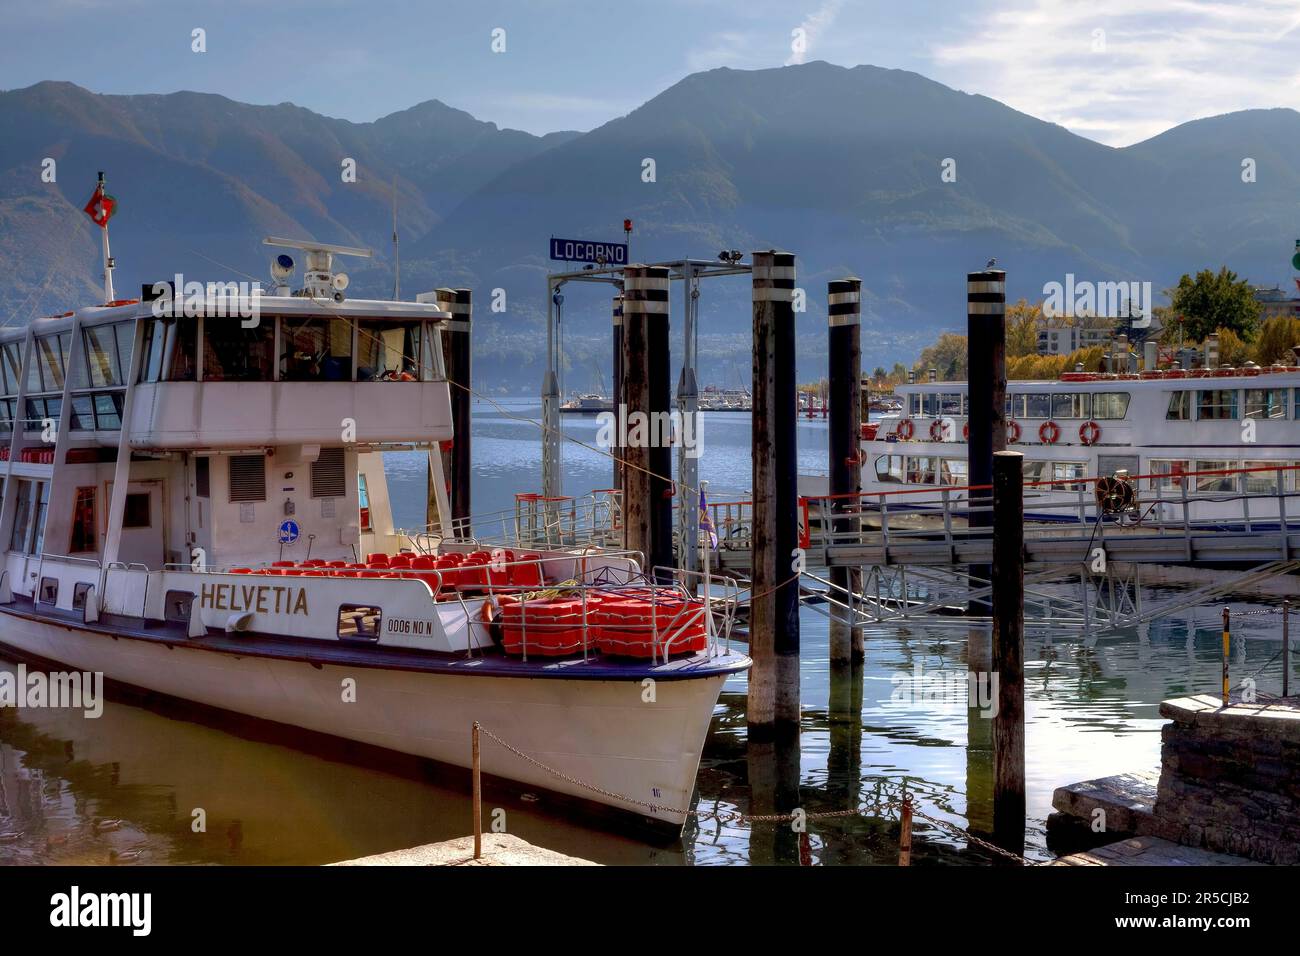 Liner Helvetia, Port of Locarno, Lake Maggiore, Ticino, Lake Maggiore, Switzerland Stock Photo